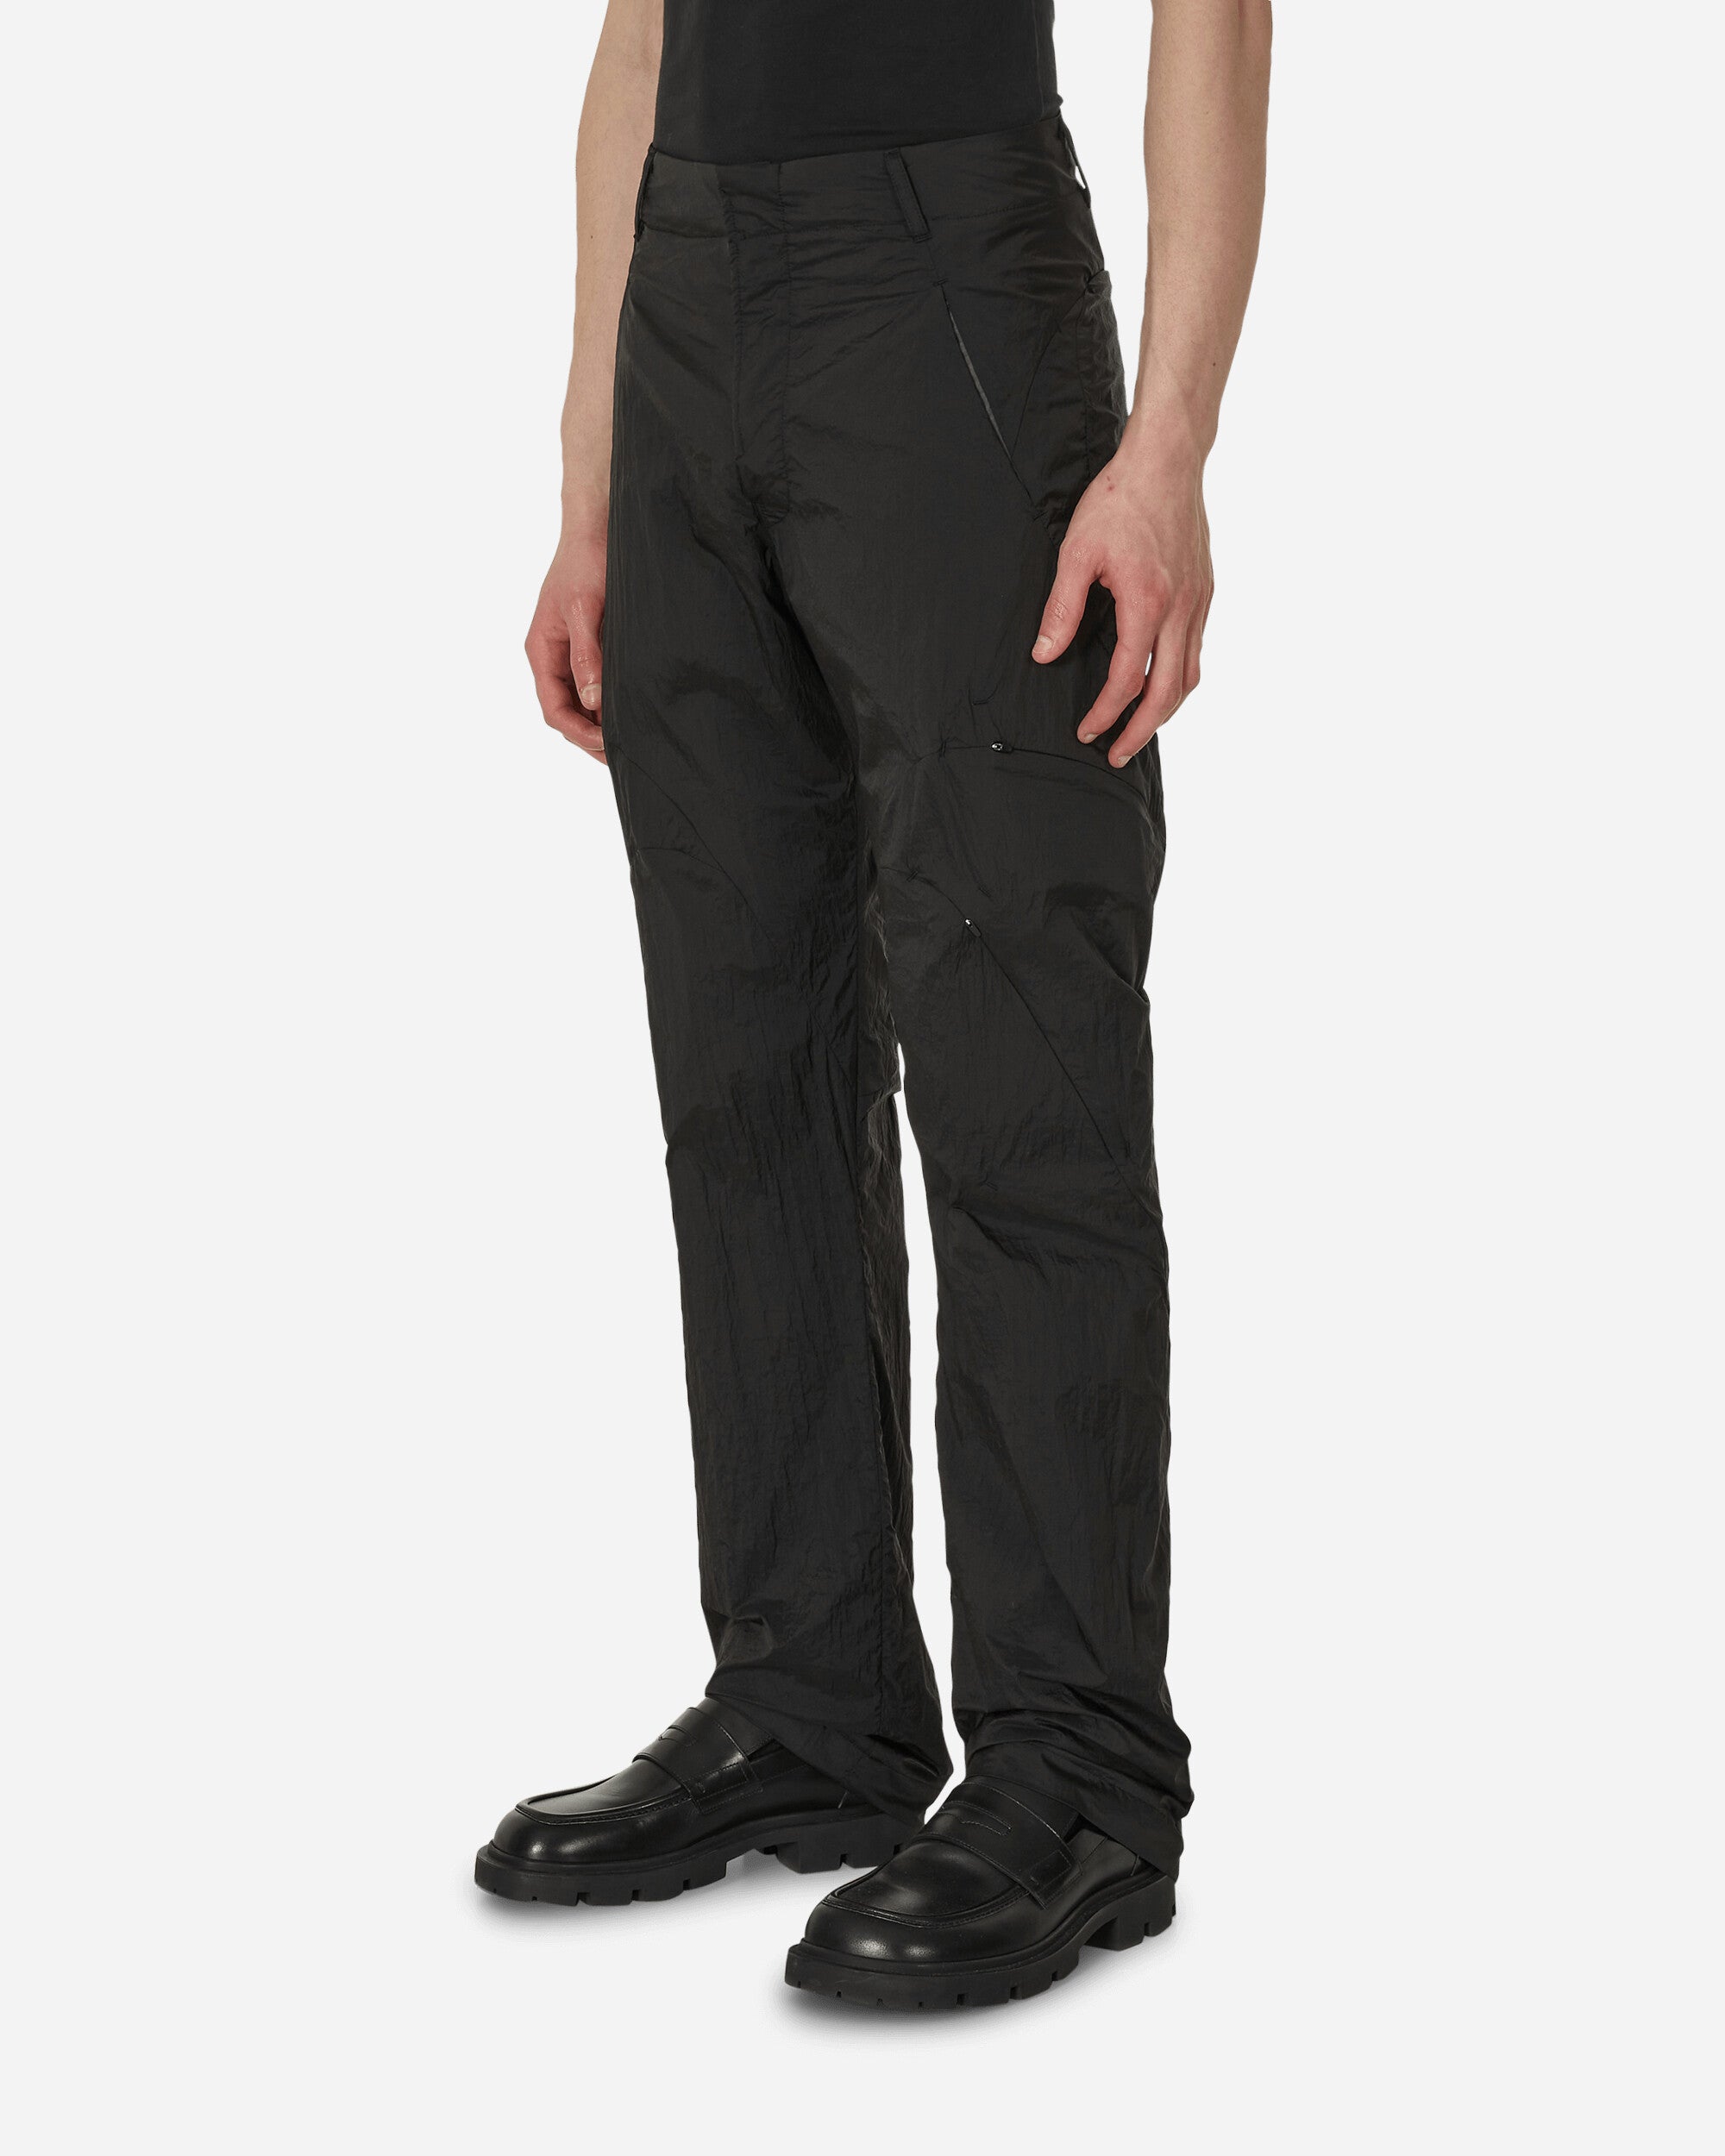 Post Archive Faction (PAF) 5.0+ Trousers Center Black/Charcoal Pants Trousers 50BTCBC BKCH 